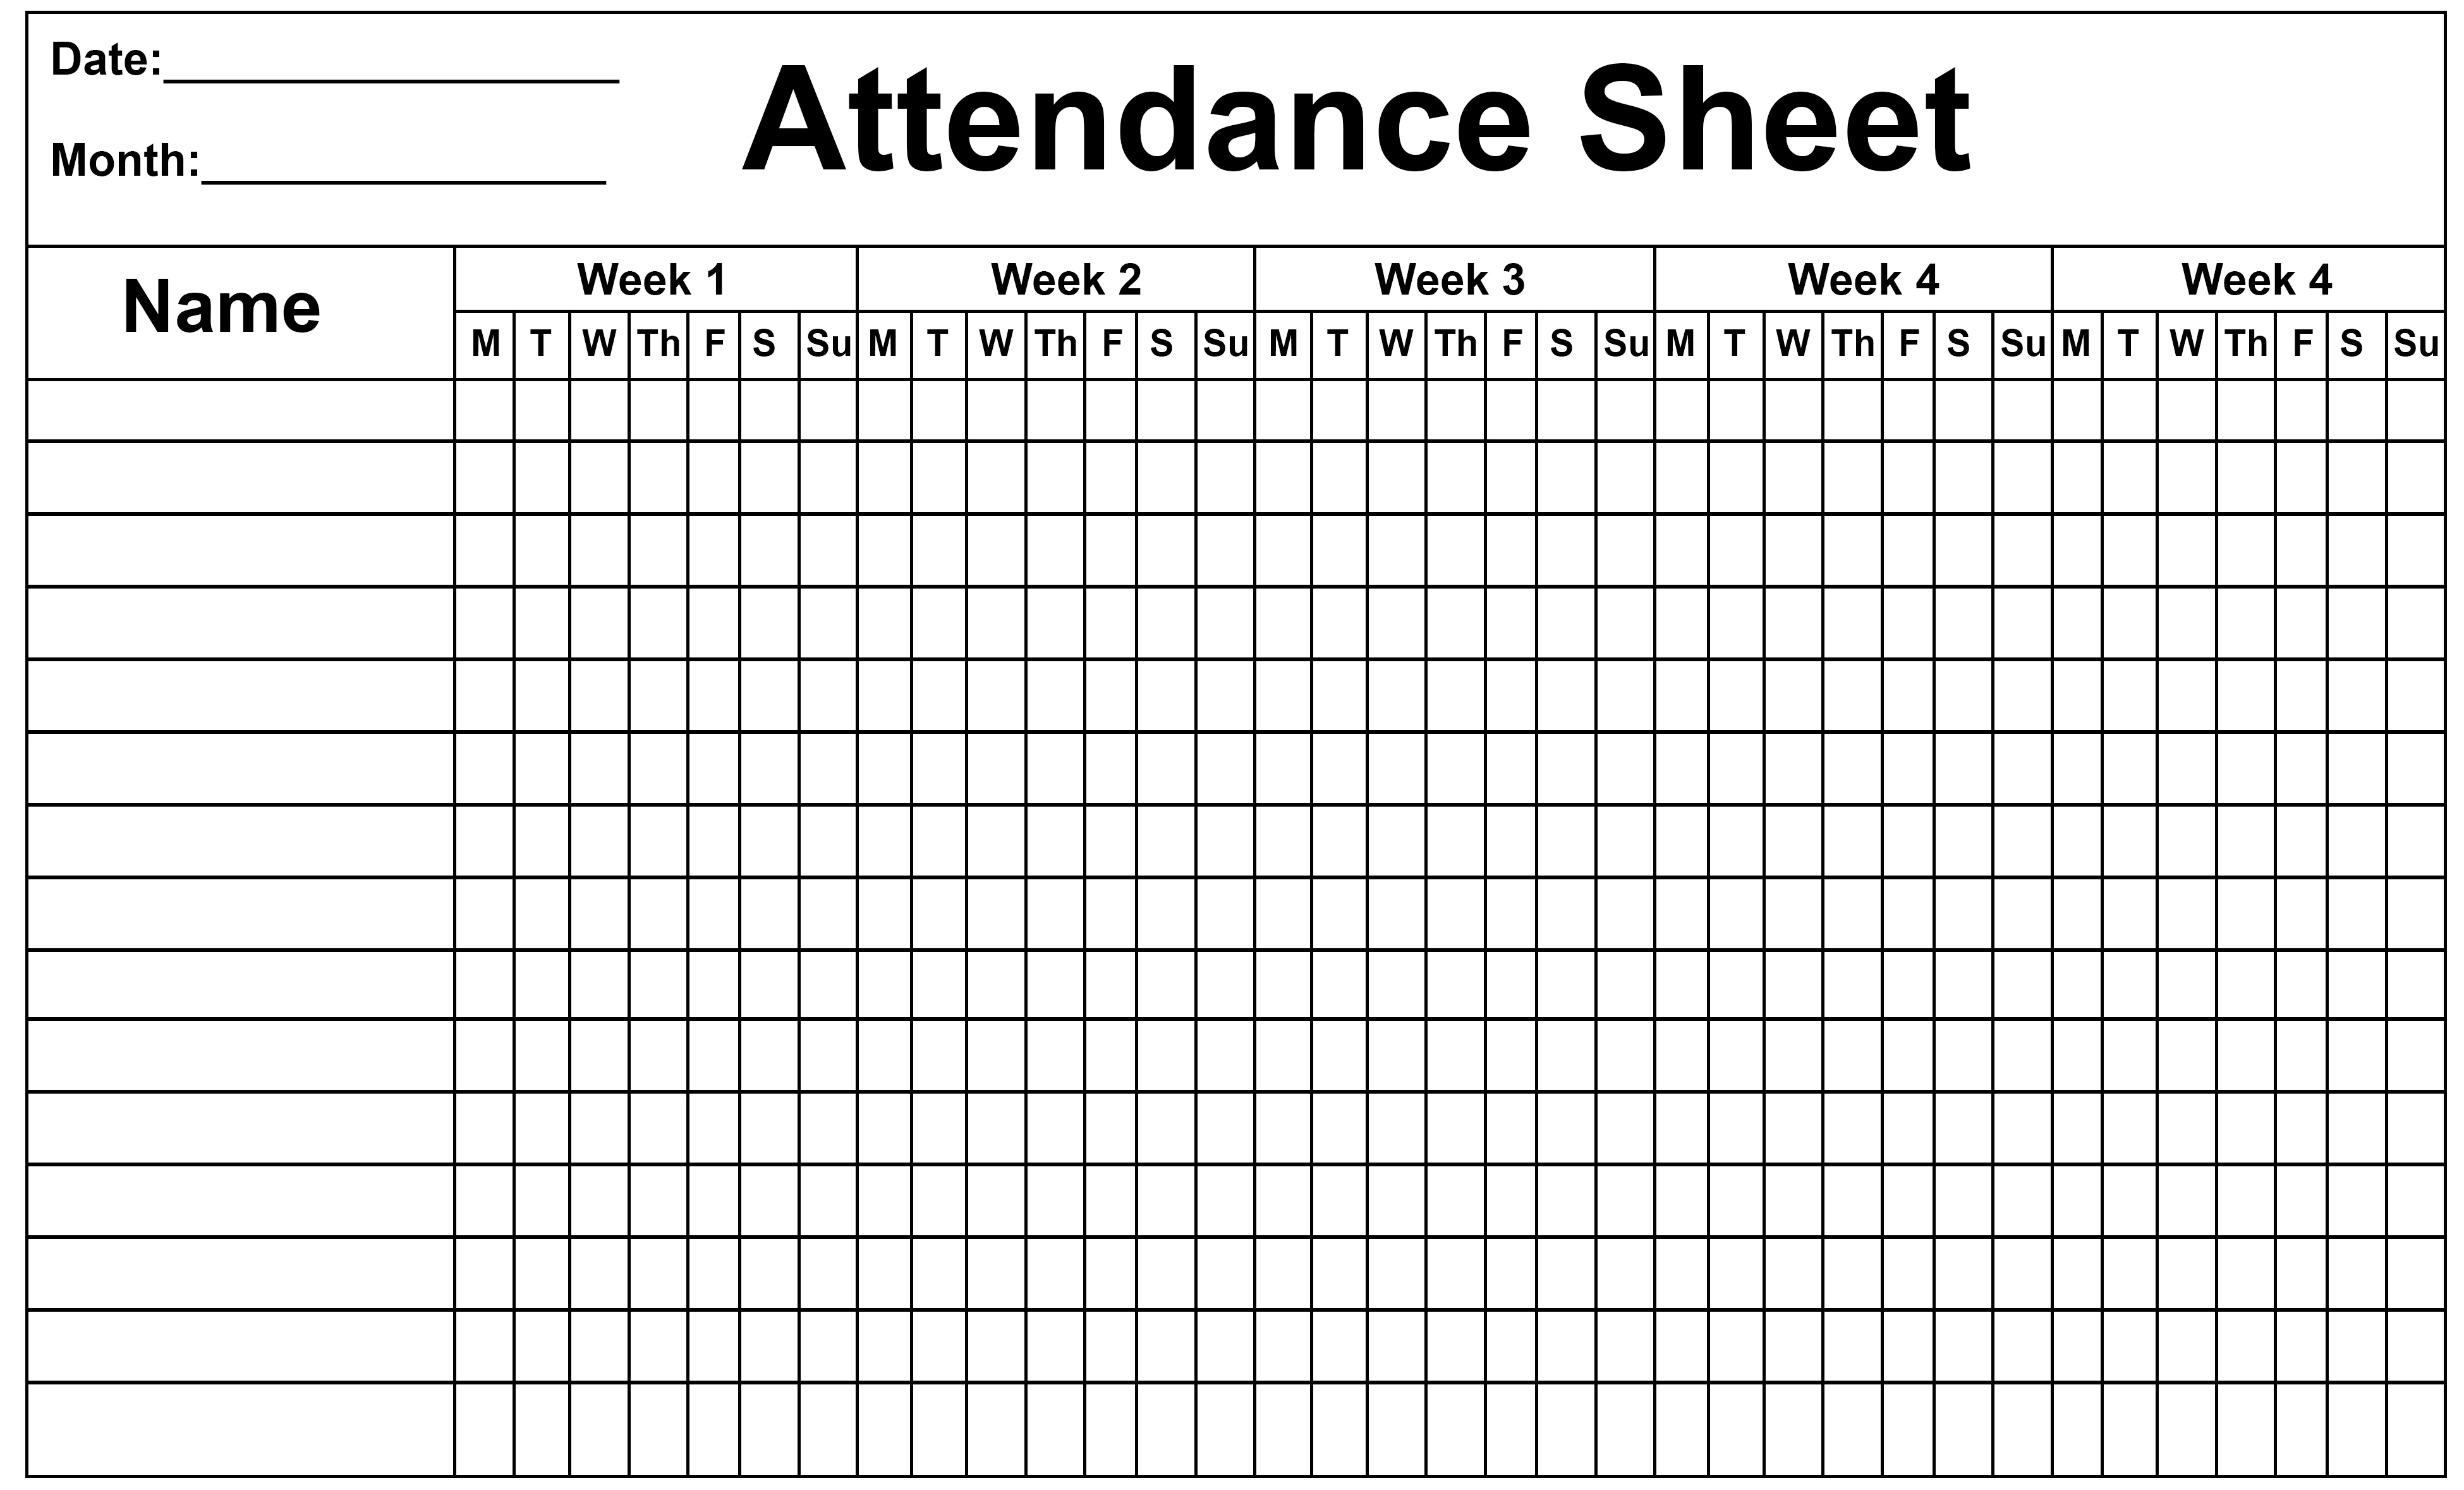 2020 employee attendance calendar templates calendar